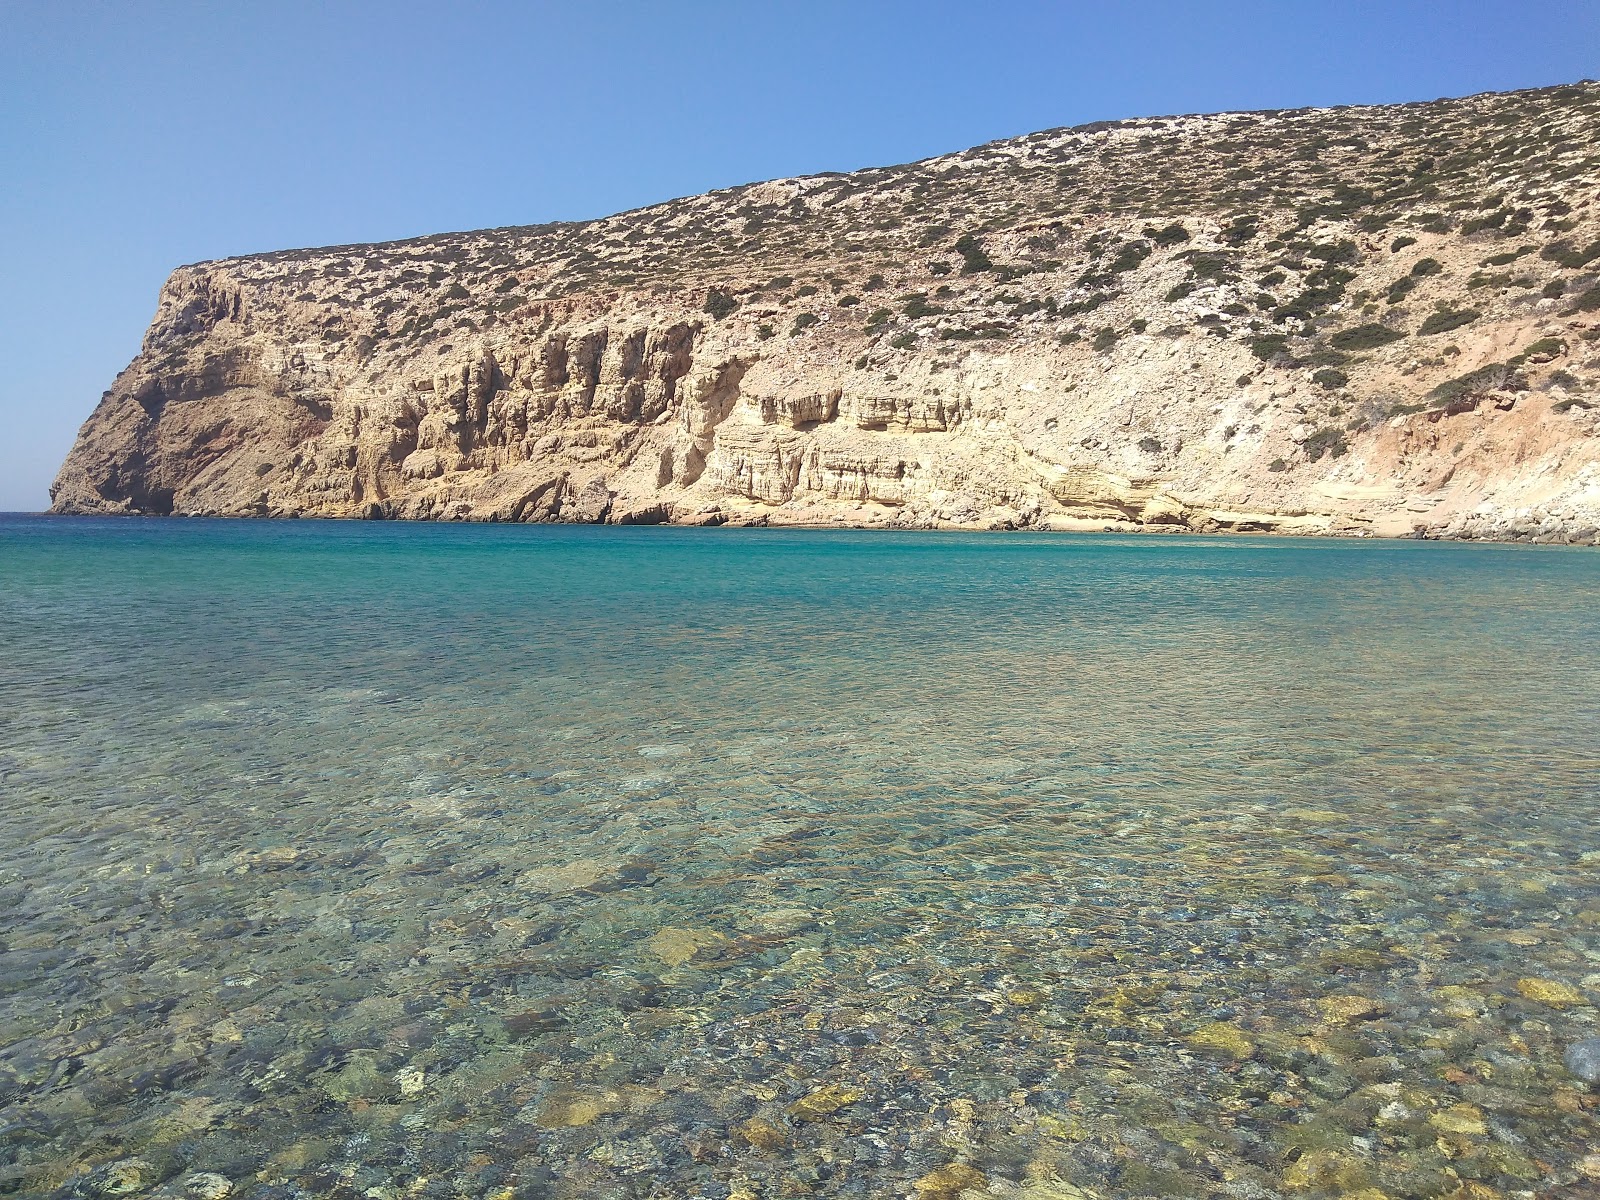 Foto von Helatros Beach Kasos Greece befindet sich in natürlicher umgebung